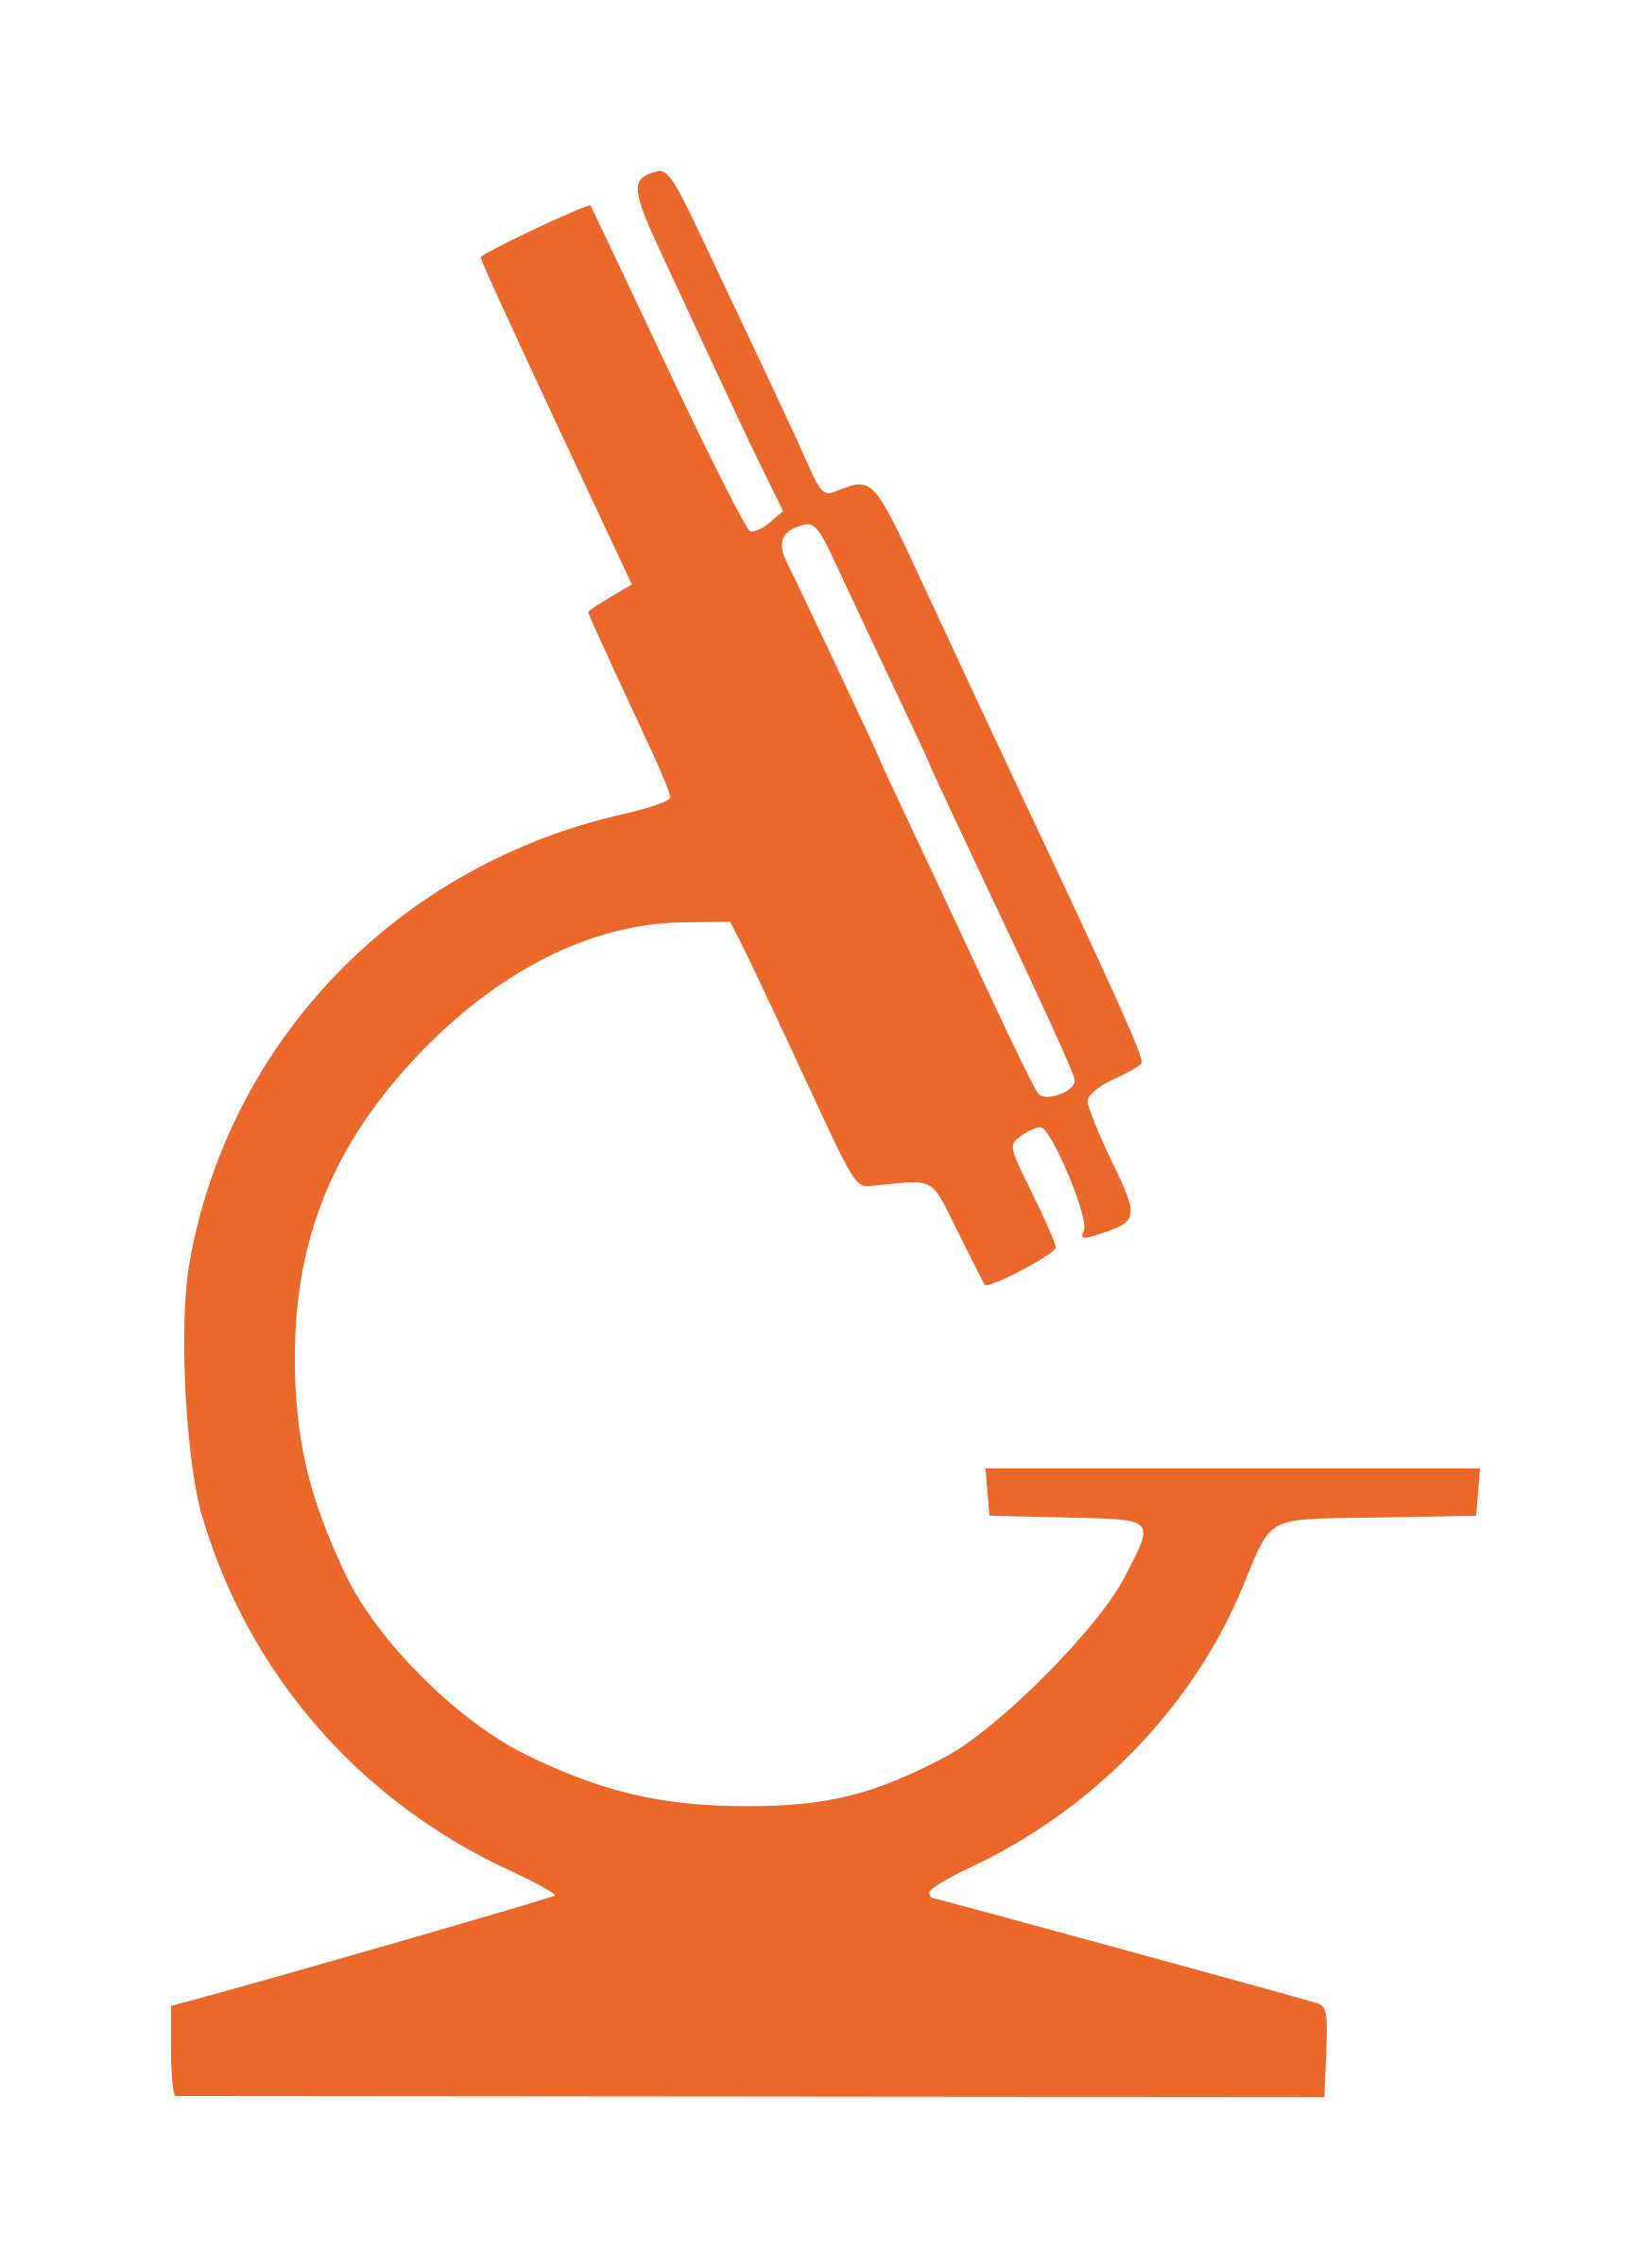 microscope clipart symbol